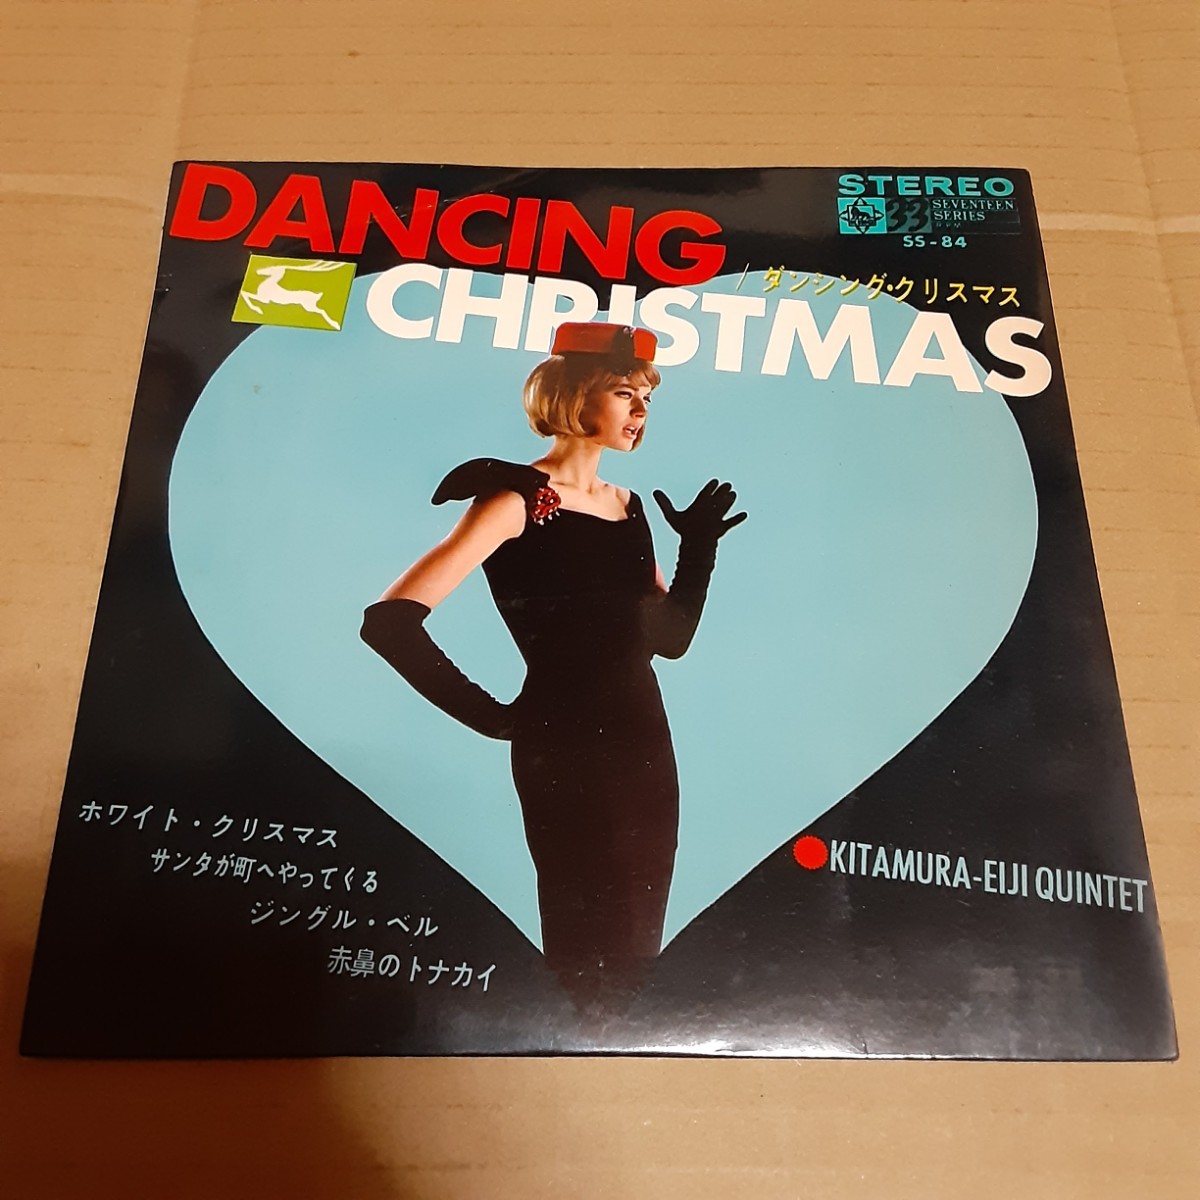 北村英治クインテット ダンシングクリスマス SS-84 EP レコード_画像1